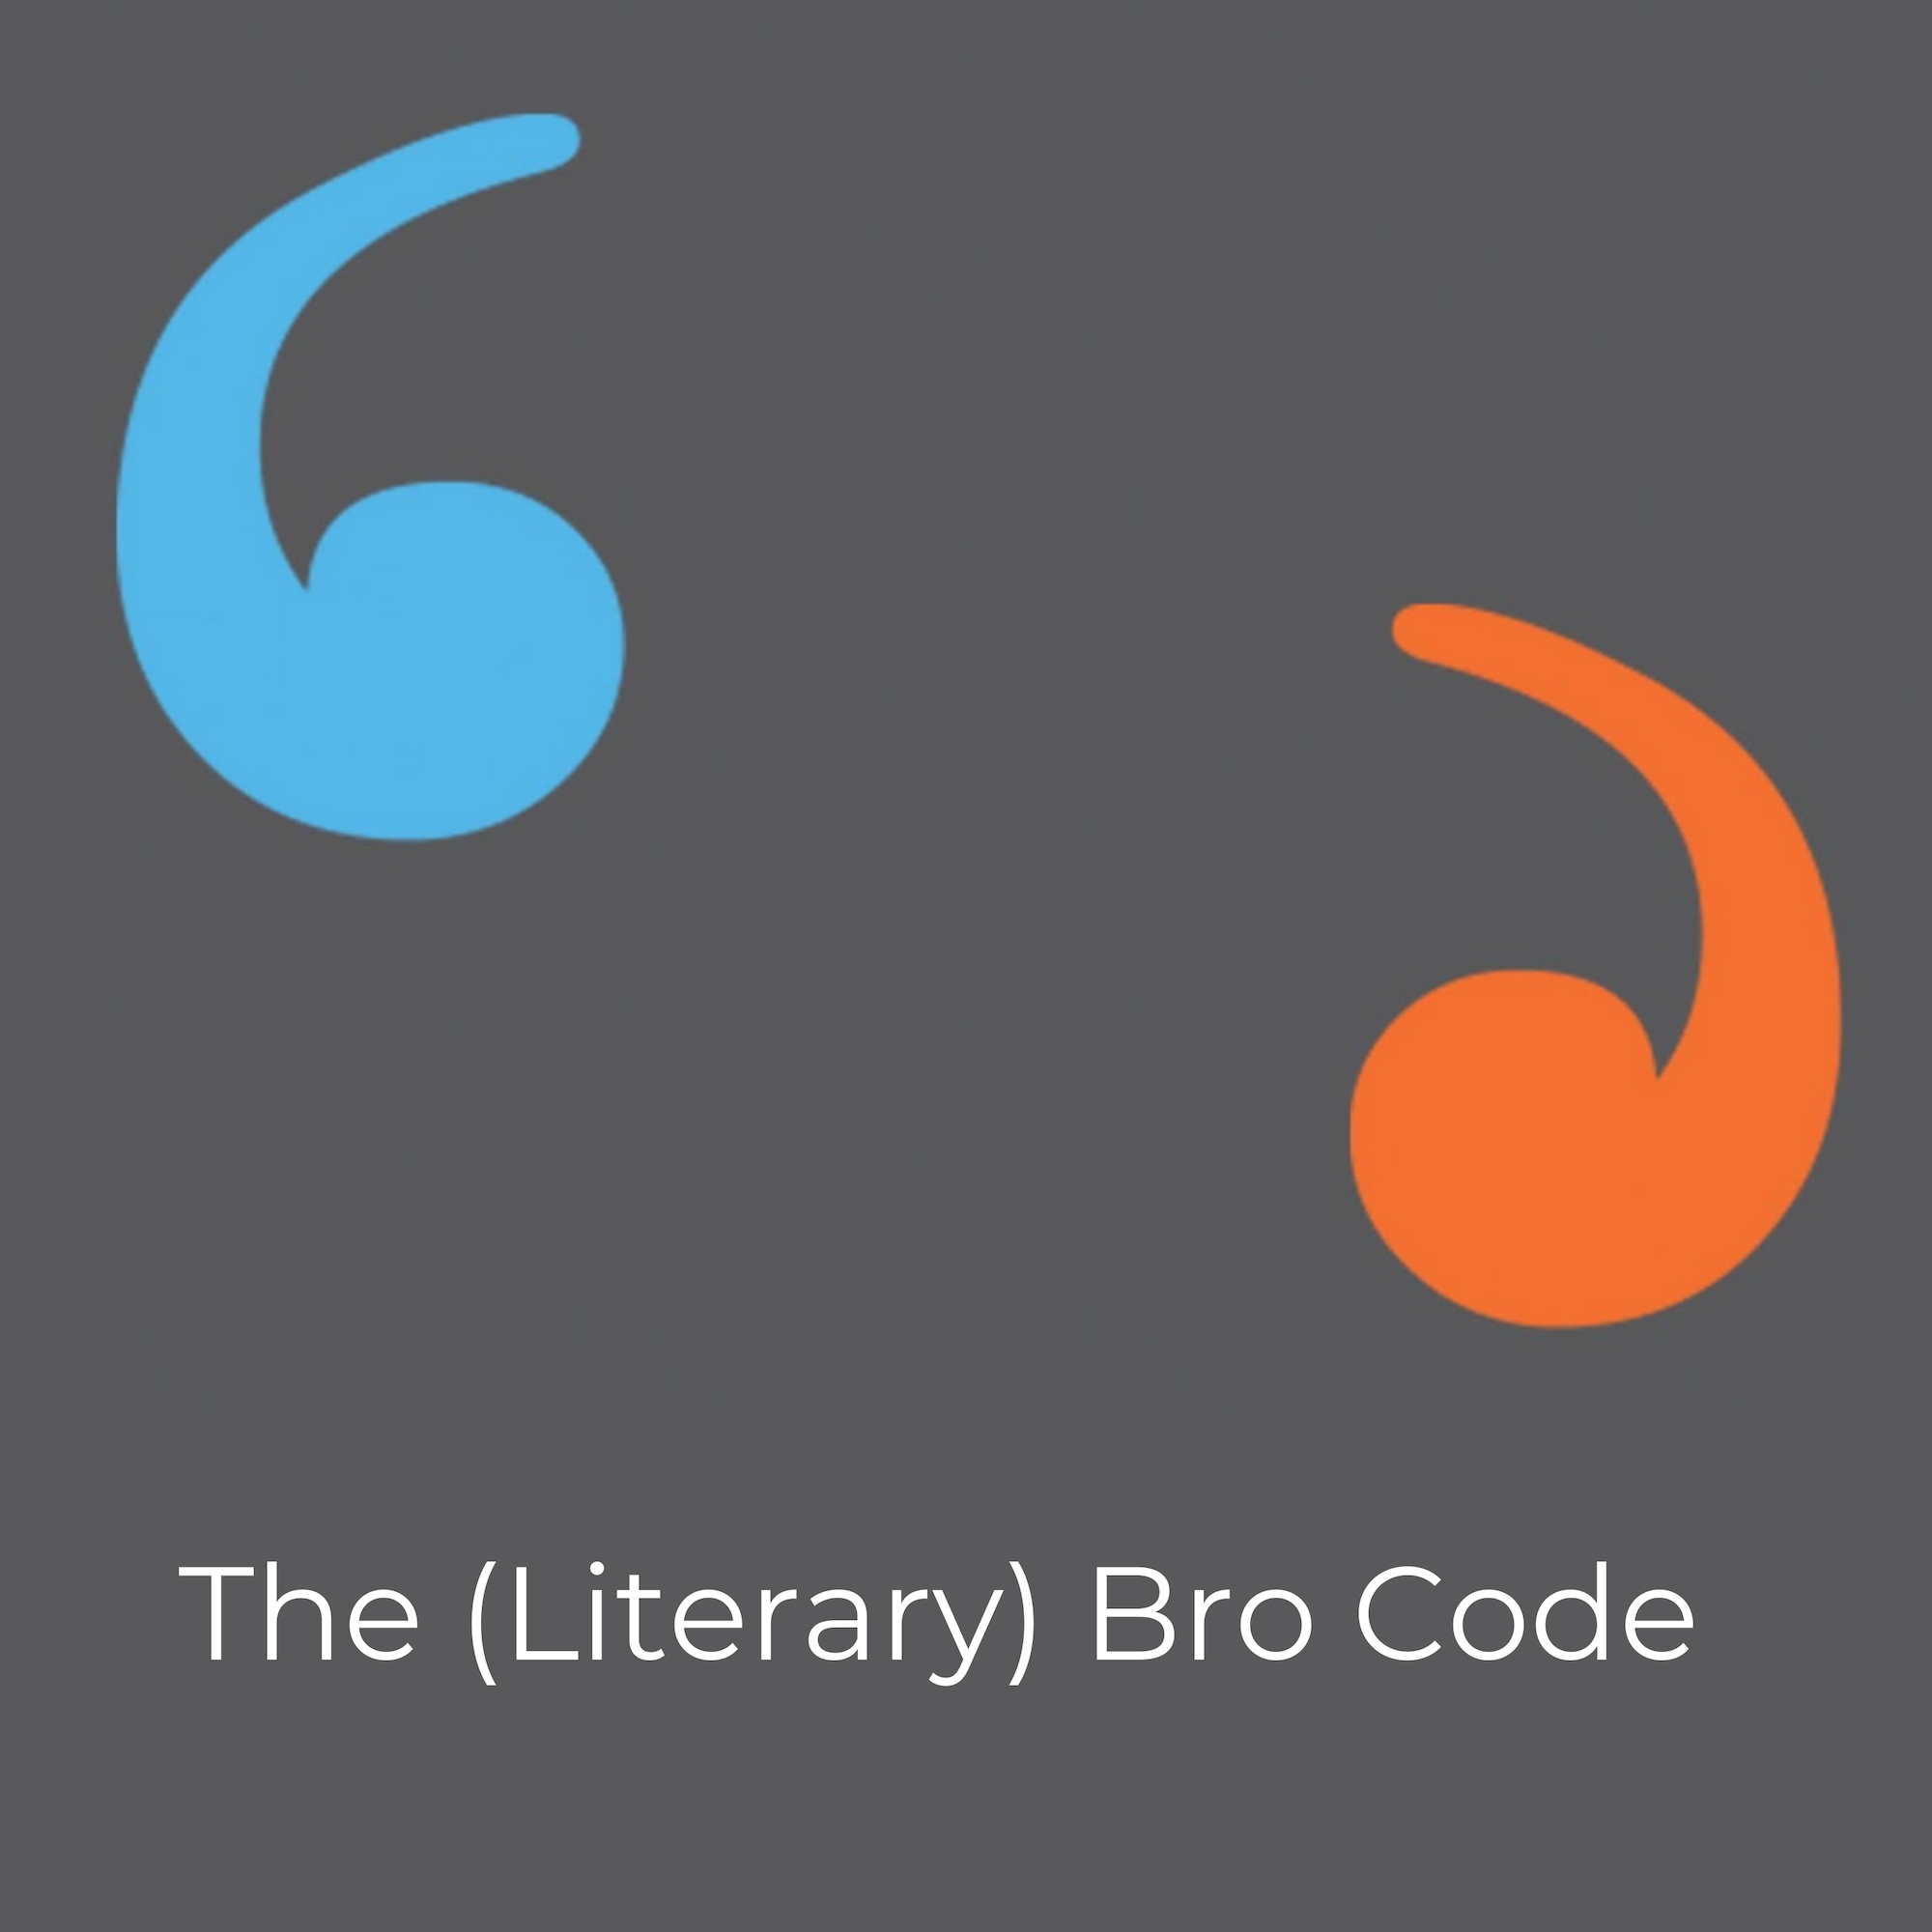 The (Literary) Bro Code